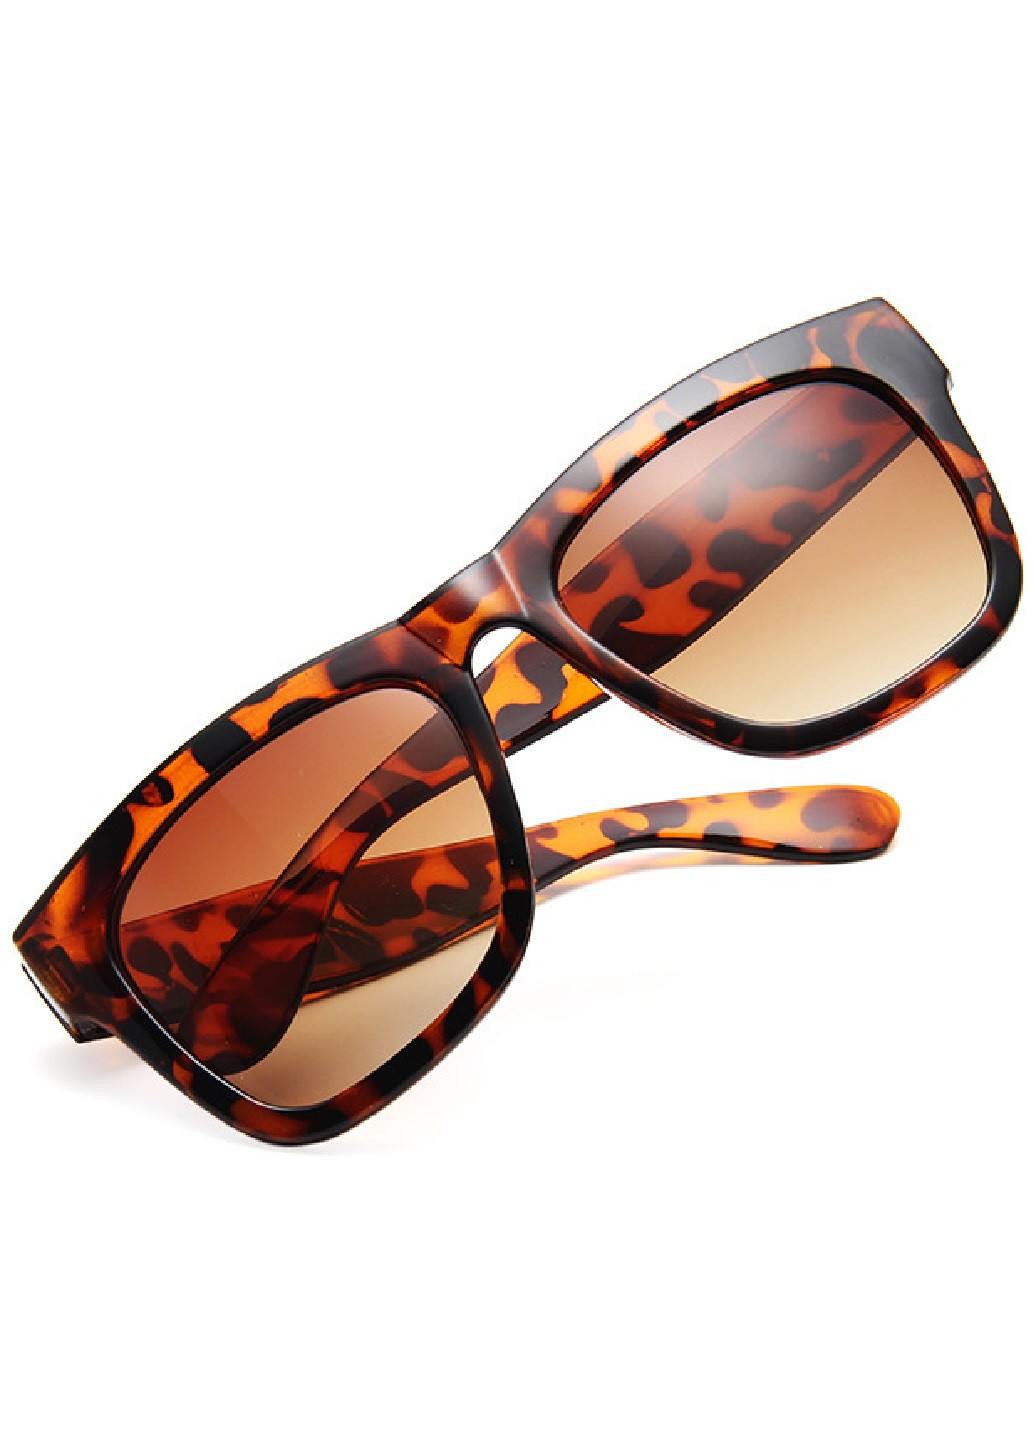 Солнцезащитные очки A&Co. коричневые